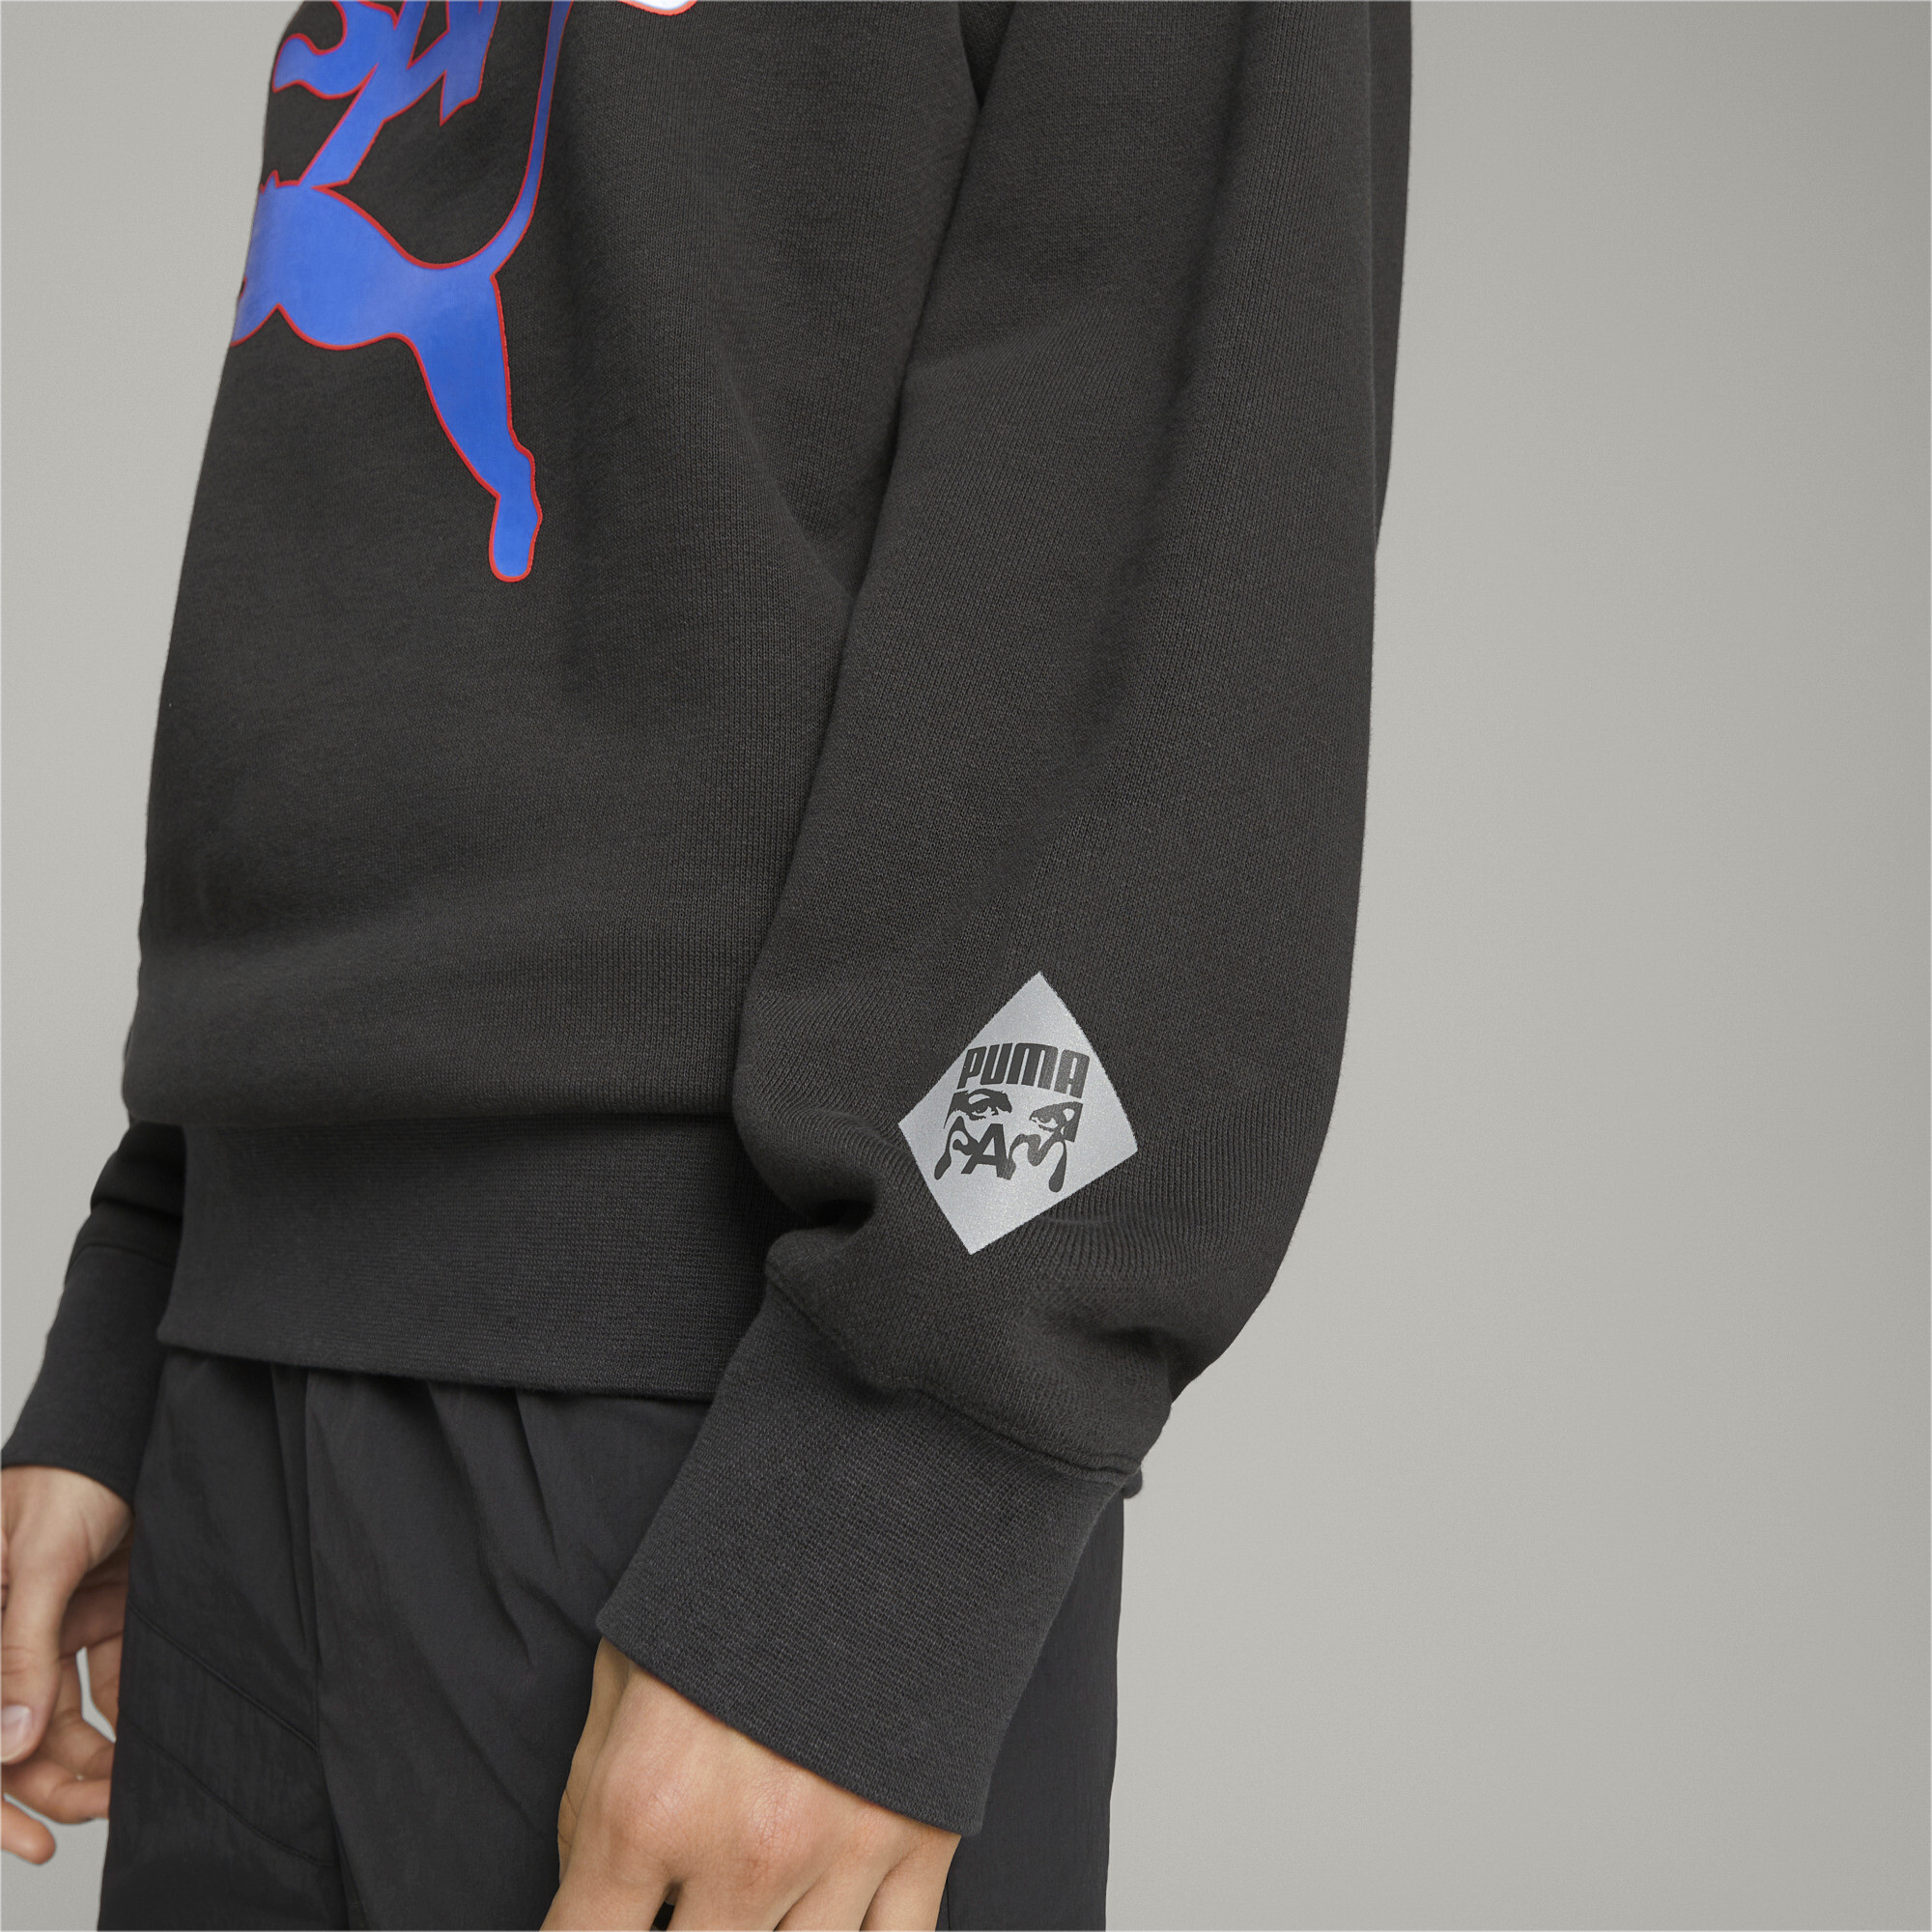 Men's PUMA X PERKS AND MINI Crewneck Sweatshirt In Black, Size 2XL